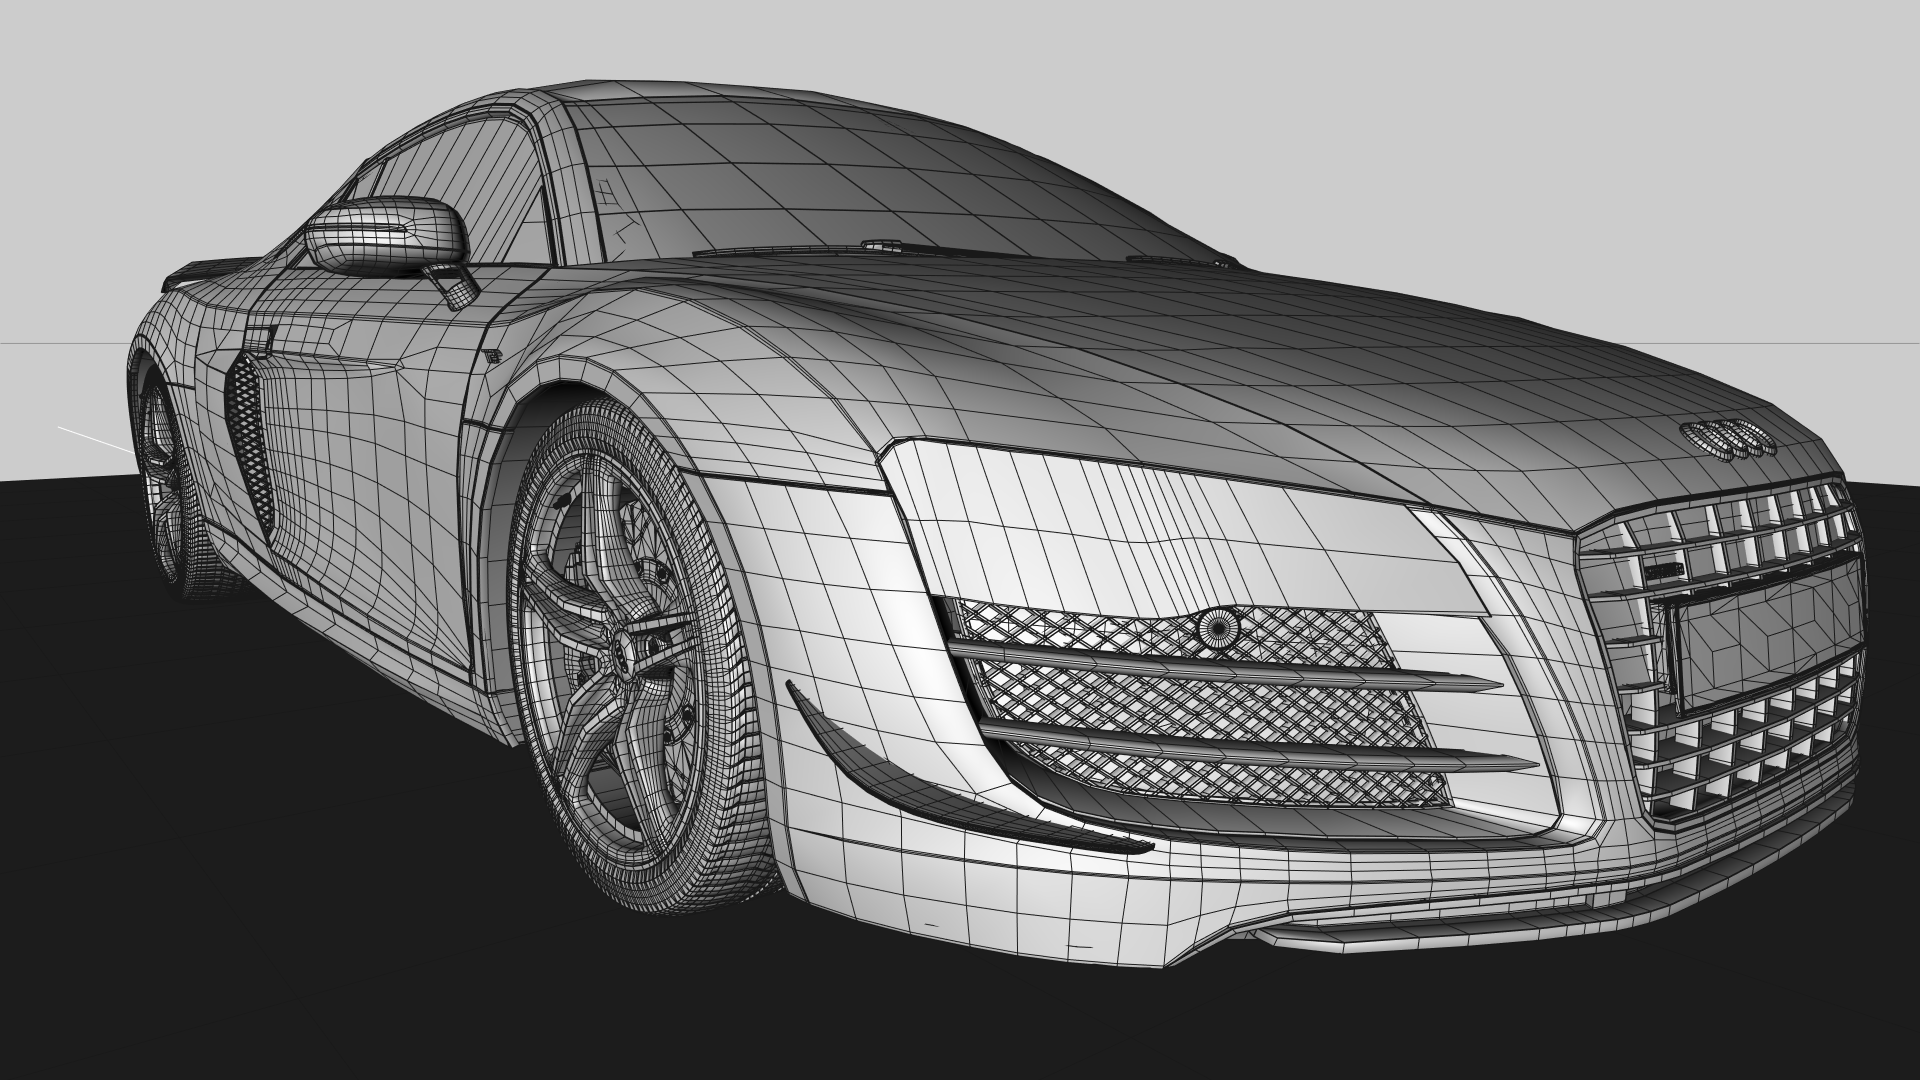 来自Sebastian Kunz的2015款奥迪R8手绘效果图 - 环球汽车设计网—汽车设计第一资讯网